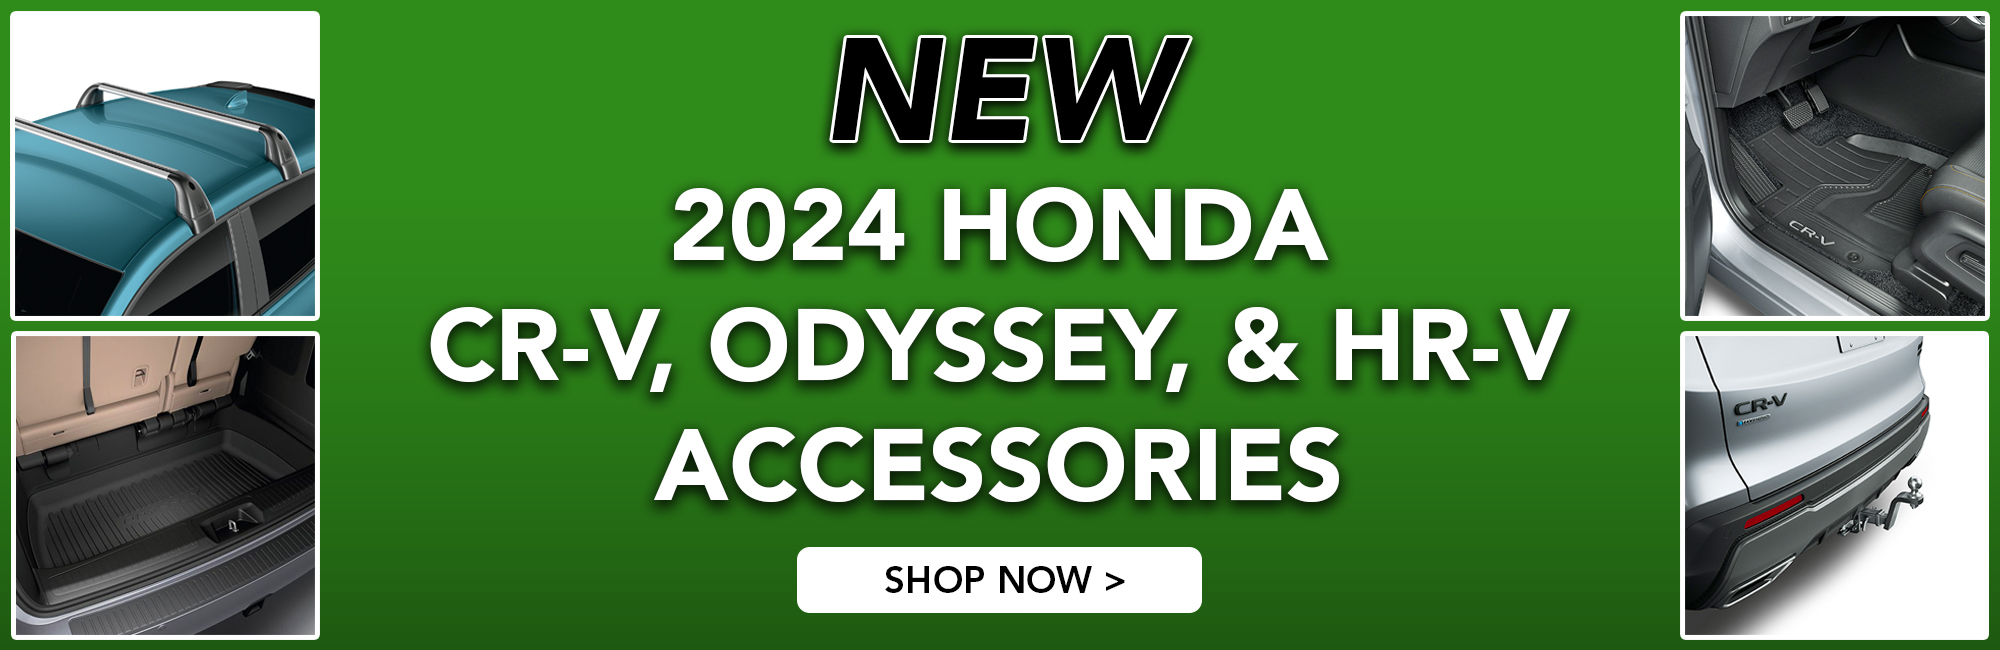 2024 Honda Accessories